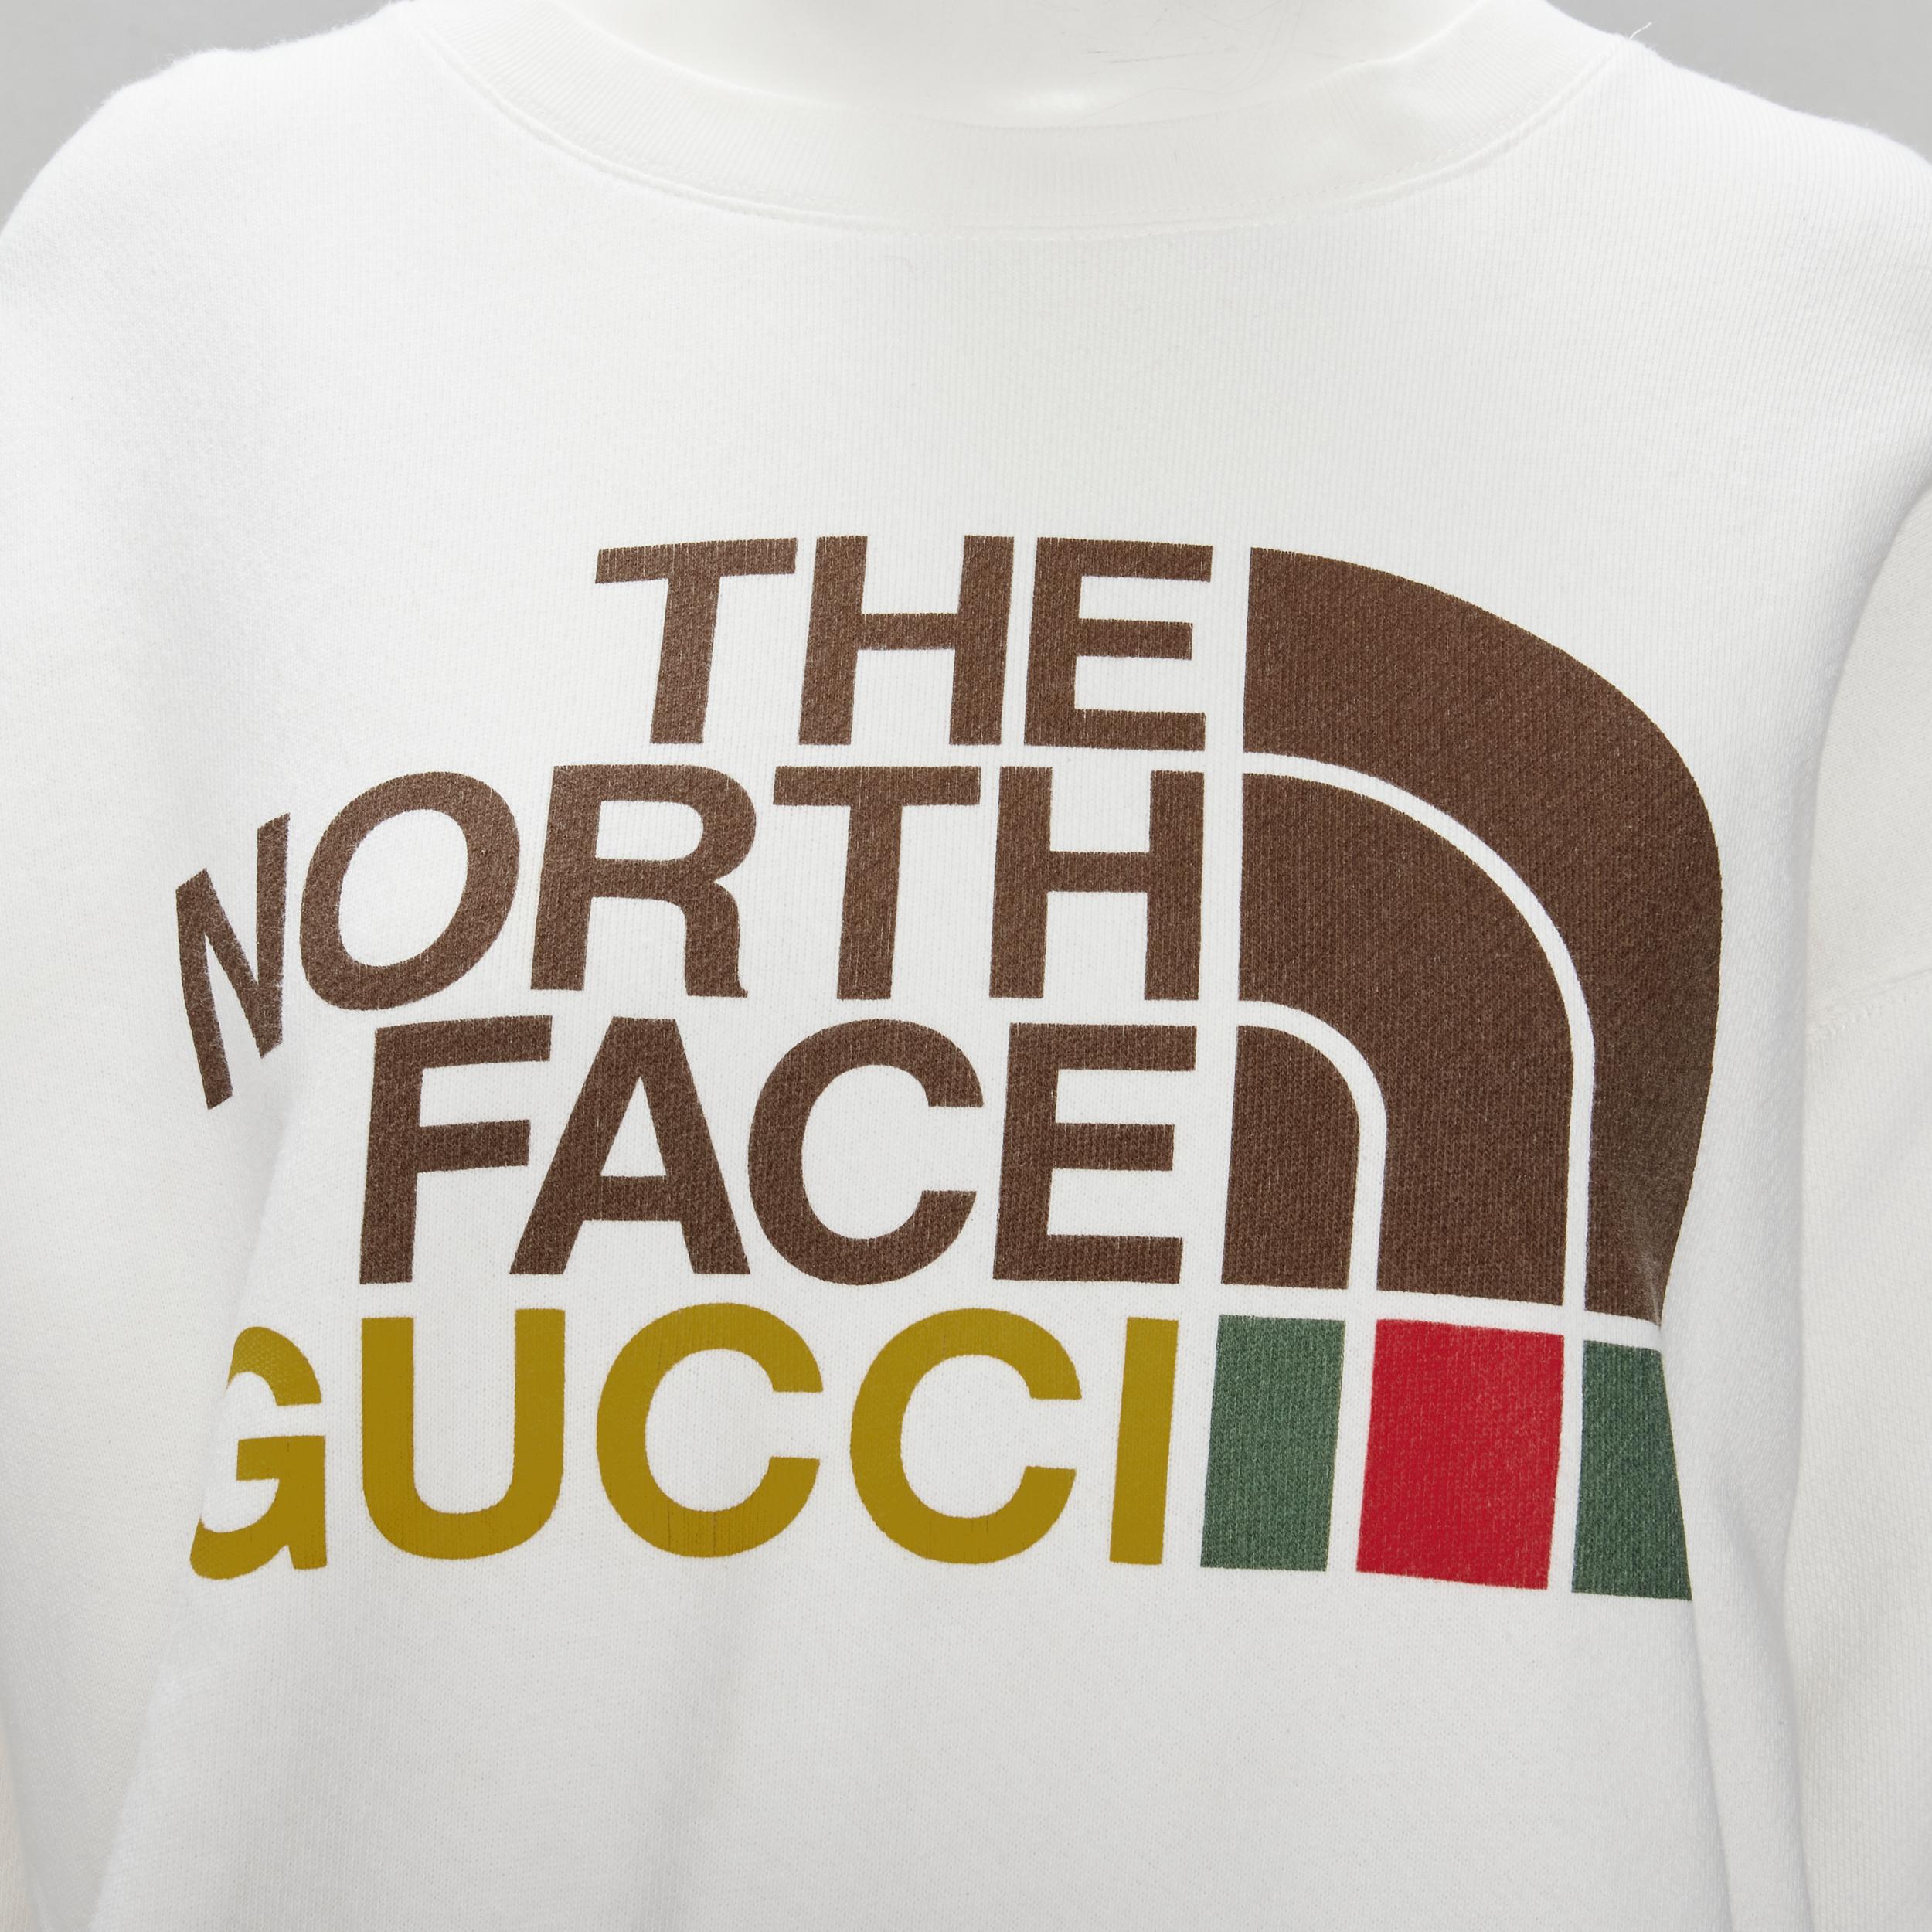 GUCCI THE NORTH FACE Pullover aus weißer Baumwolle mit Logodruck in Übergröße XS
Marke: Gucci
Collection'S: The North Face 
MATERIAL: Baumwolle
Farbe: Weiß
Muster: Solide
Hergestellt in: Italien

ZUSTAND:
Zustand: Ausgezeichnet, dieser Artikel war